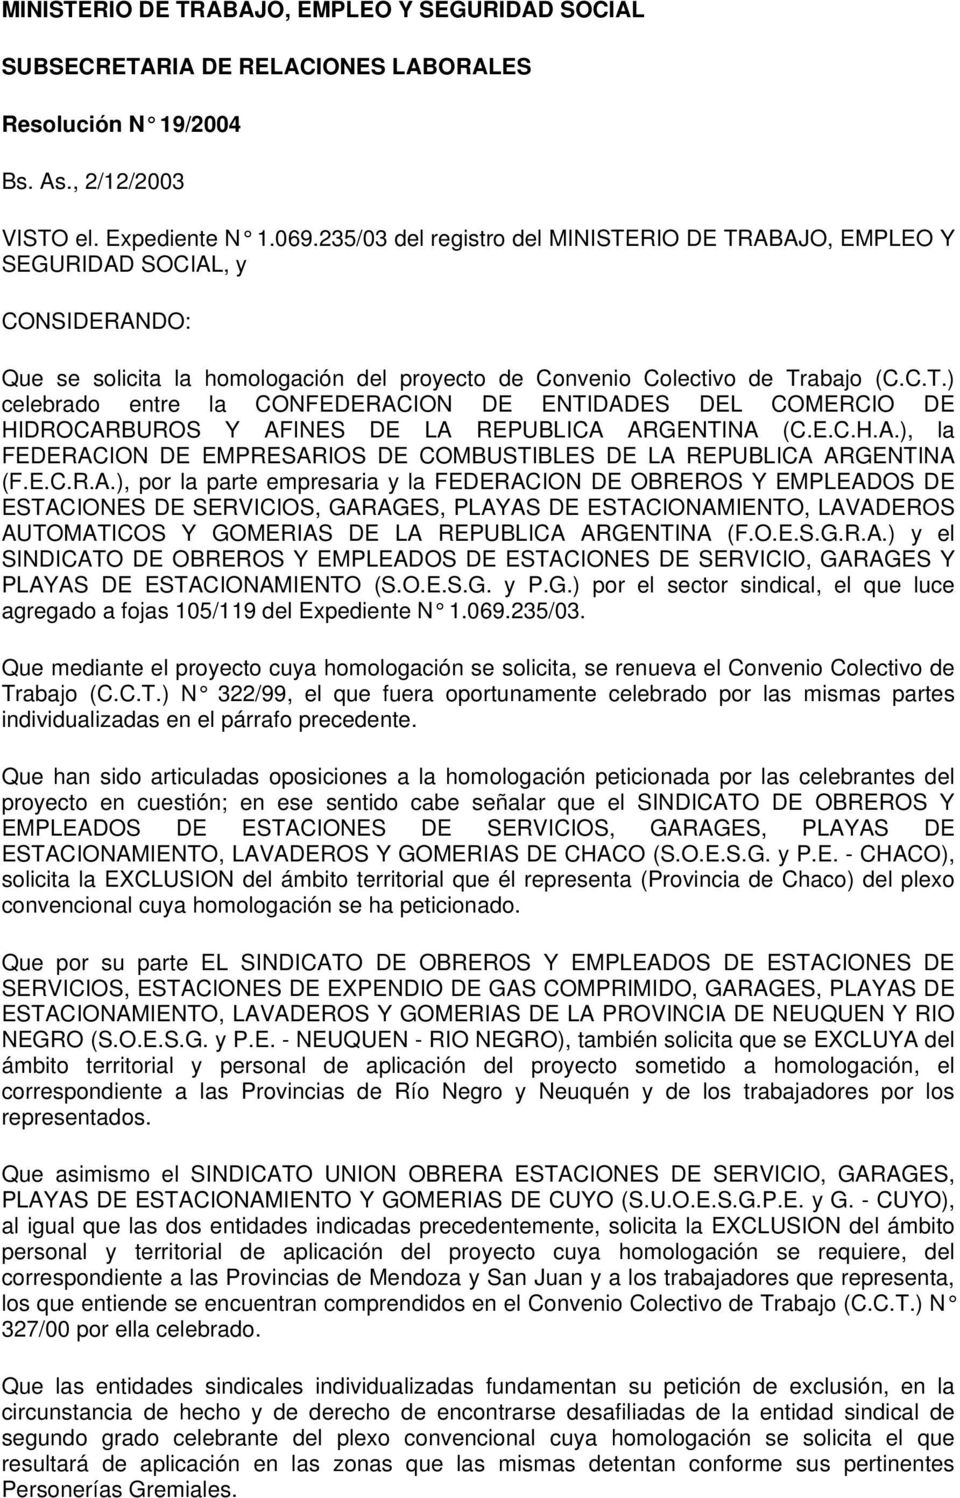 E.C.H.A.), la FEDERACION DE EMPRESARIOS DE COMBUSTIBLES DE LA REPUBLICA ARGENTINA (F.E.C.R.A.), por la parte empresaria y la FEDERACION DE OBREROS Y EMPLEADOS DE ESTACIONES DE SERVICIOS, GARAGES, PLAYAS DE ESTACIONAMIENTO, LAVADEROS AUTOMATICOS Y GOMERIAS DE LA REPUBLICA ARGENTINA (F.